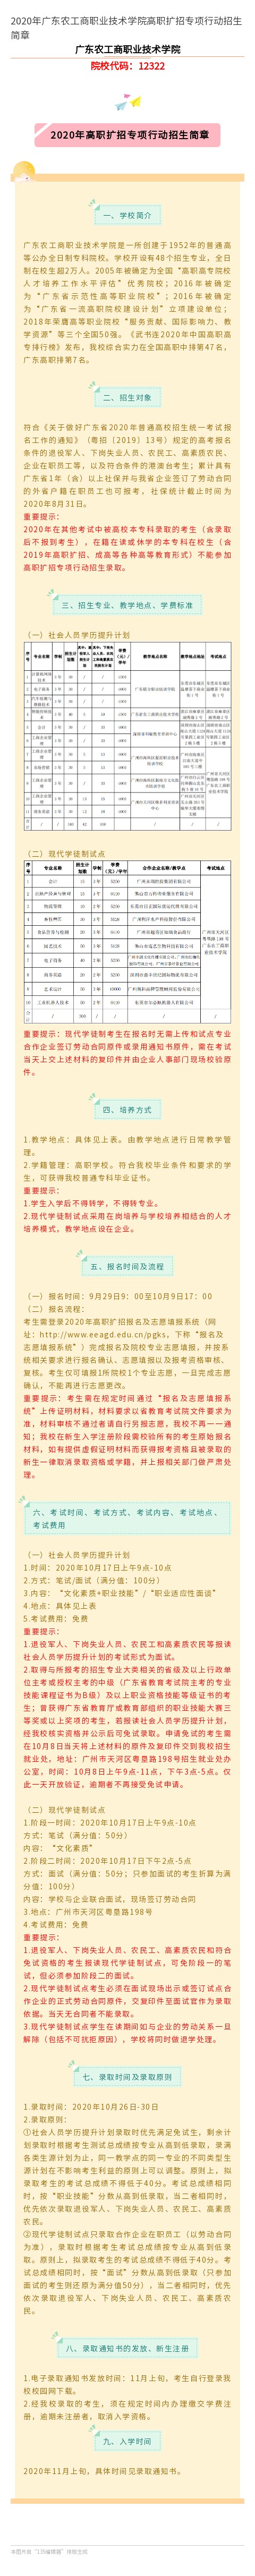 2020年广东农工商职业技术学院高职扩招专项行动招生简章